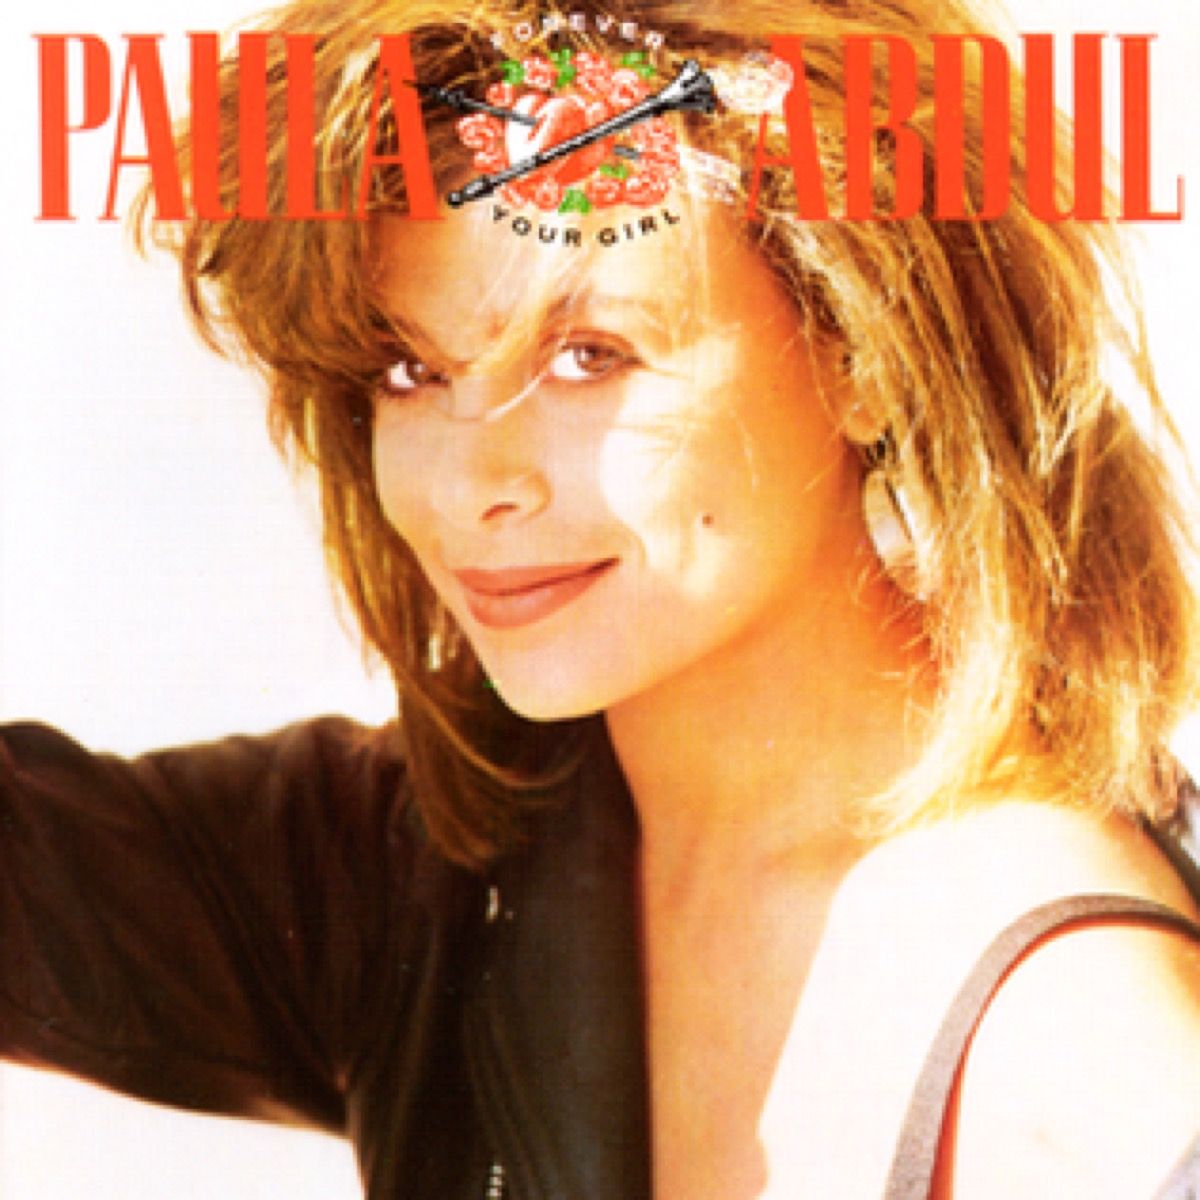 ปกอัลบั้มสำหรับ paula abdul forever your girl เพลงแห่งฤดูร้อน 1989